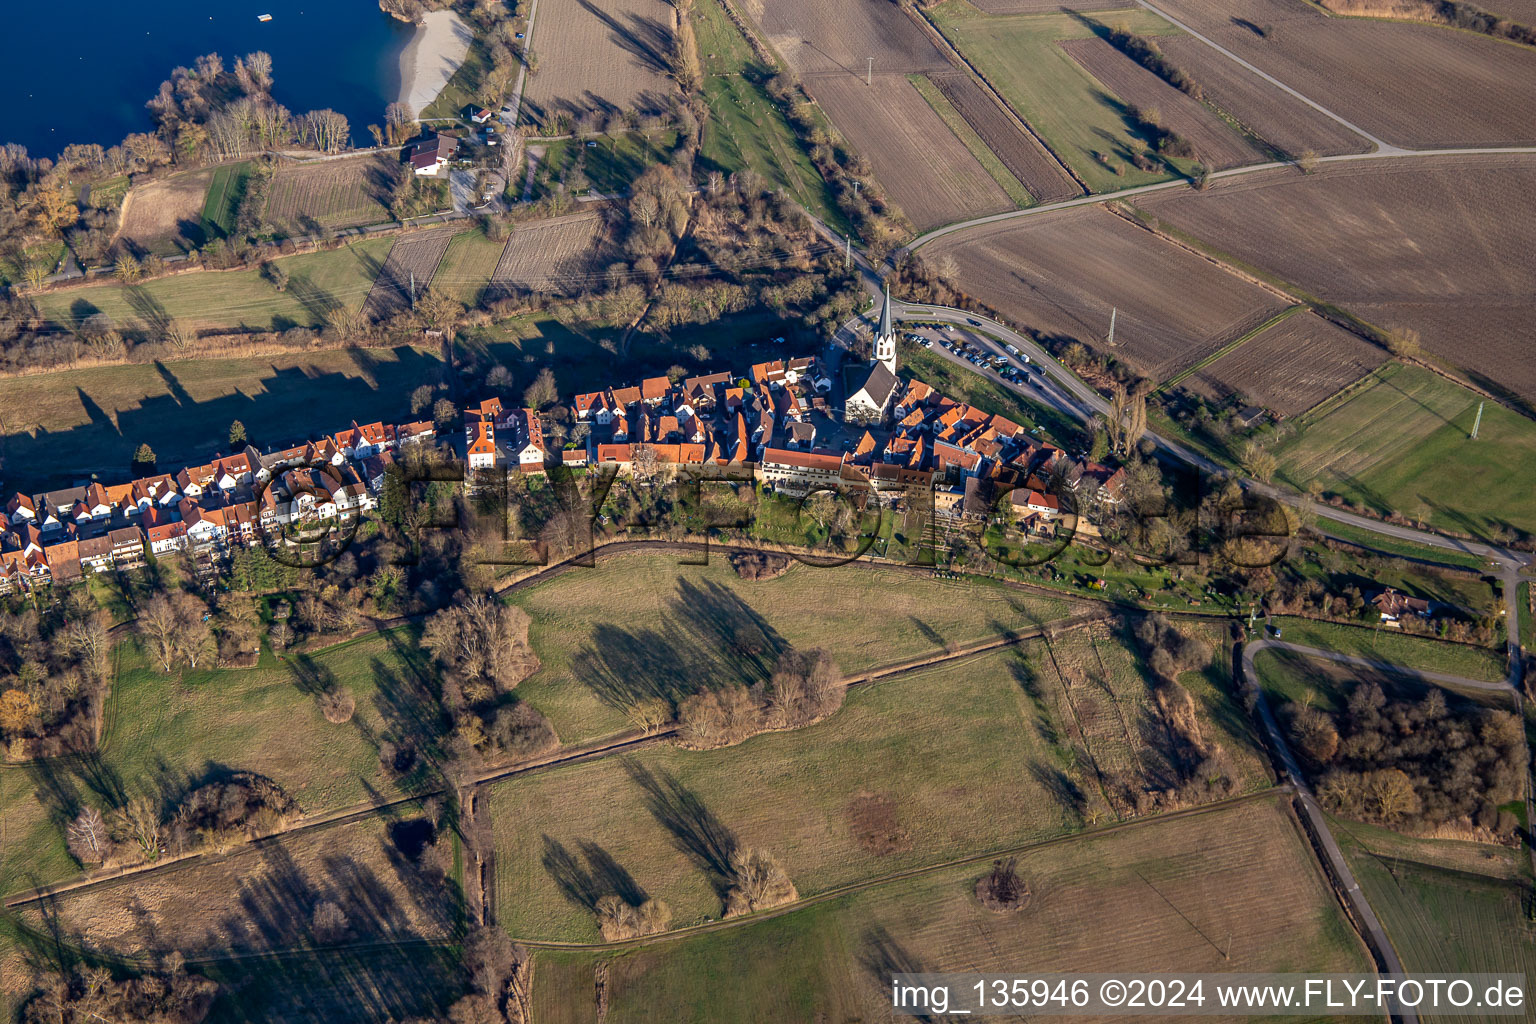 Vue aérienne de Saint Denys dans le Hinterstädel à Jockgrim dans le département Rhénanie-Palatinat, Allemagne